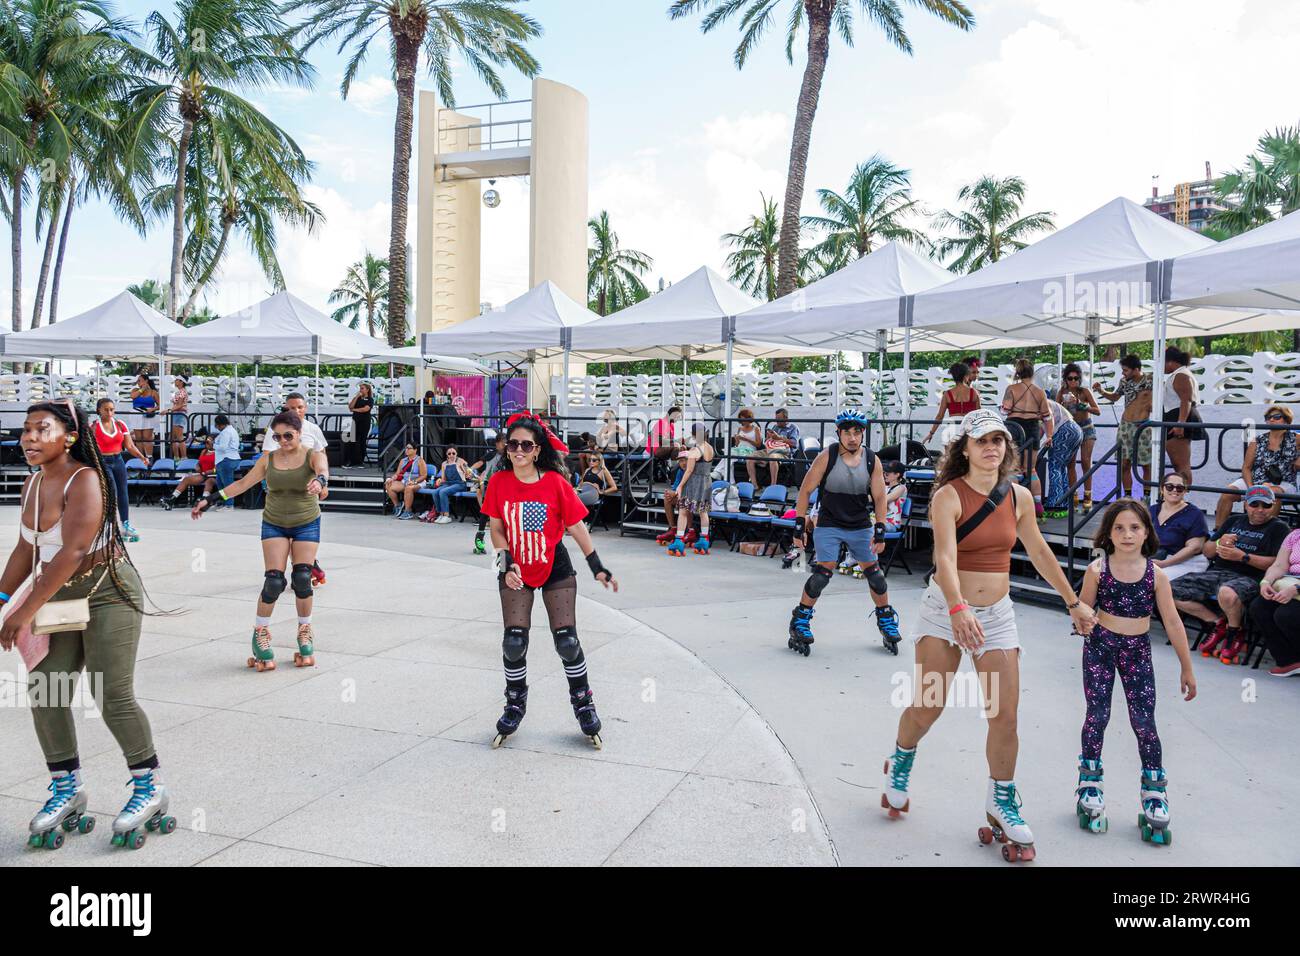 Miami Beach Floride, Ocean Terrace, quatrième activité de célébration de l'événement du 4 juillet de la fête de l'indépendance, North Shore Bandshell, patinoire de patineurs, man men ma Banque D'Images